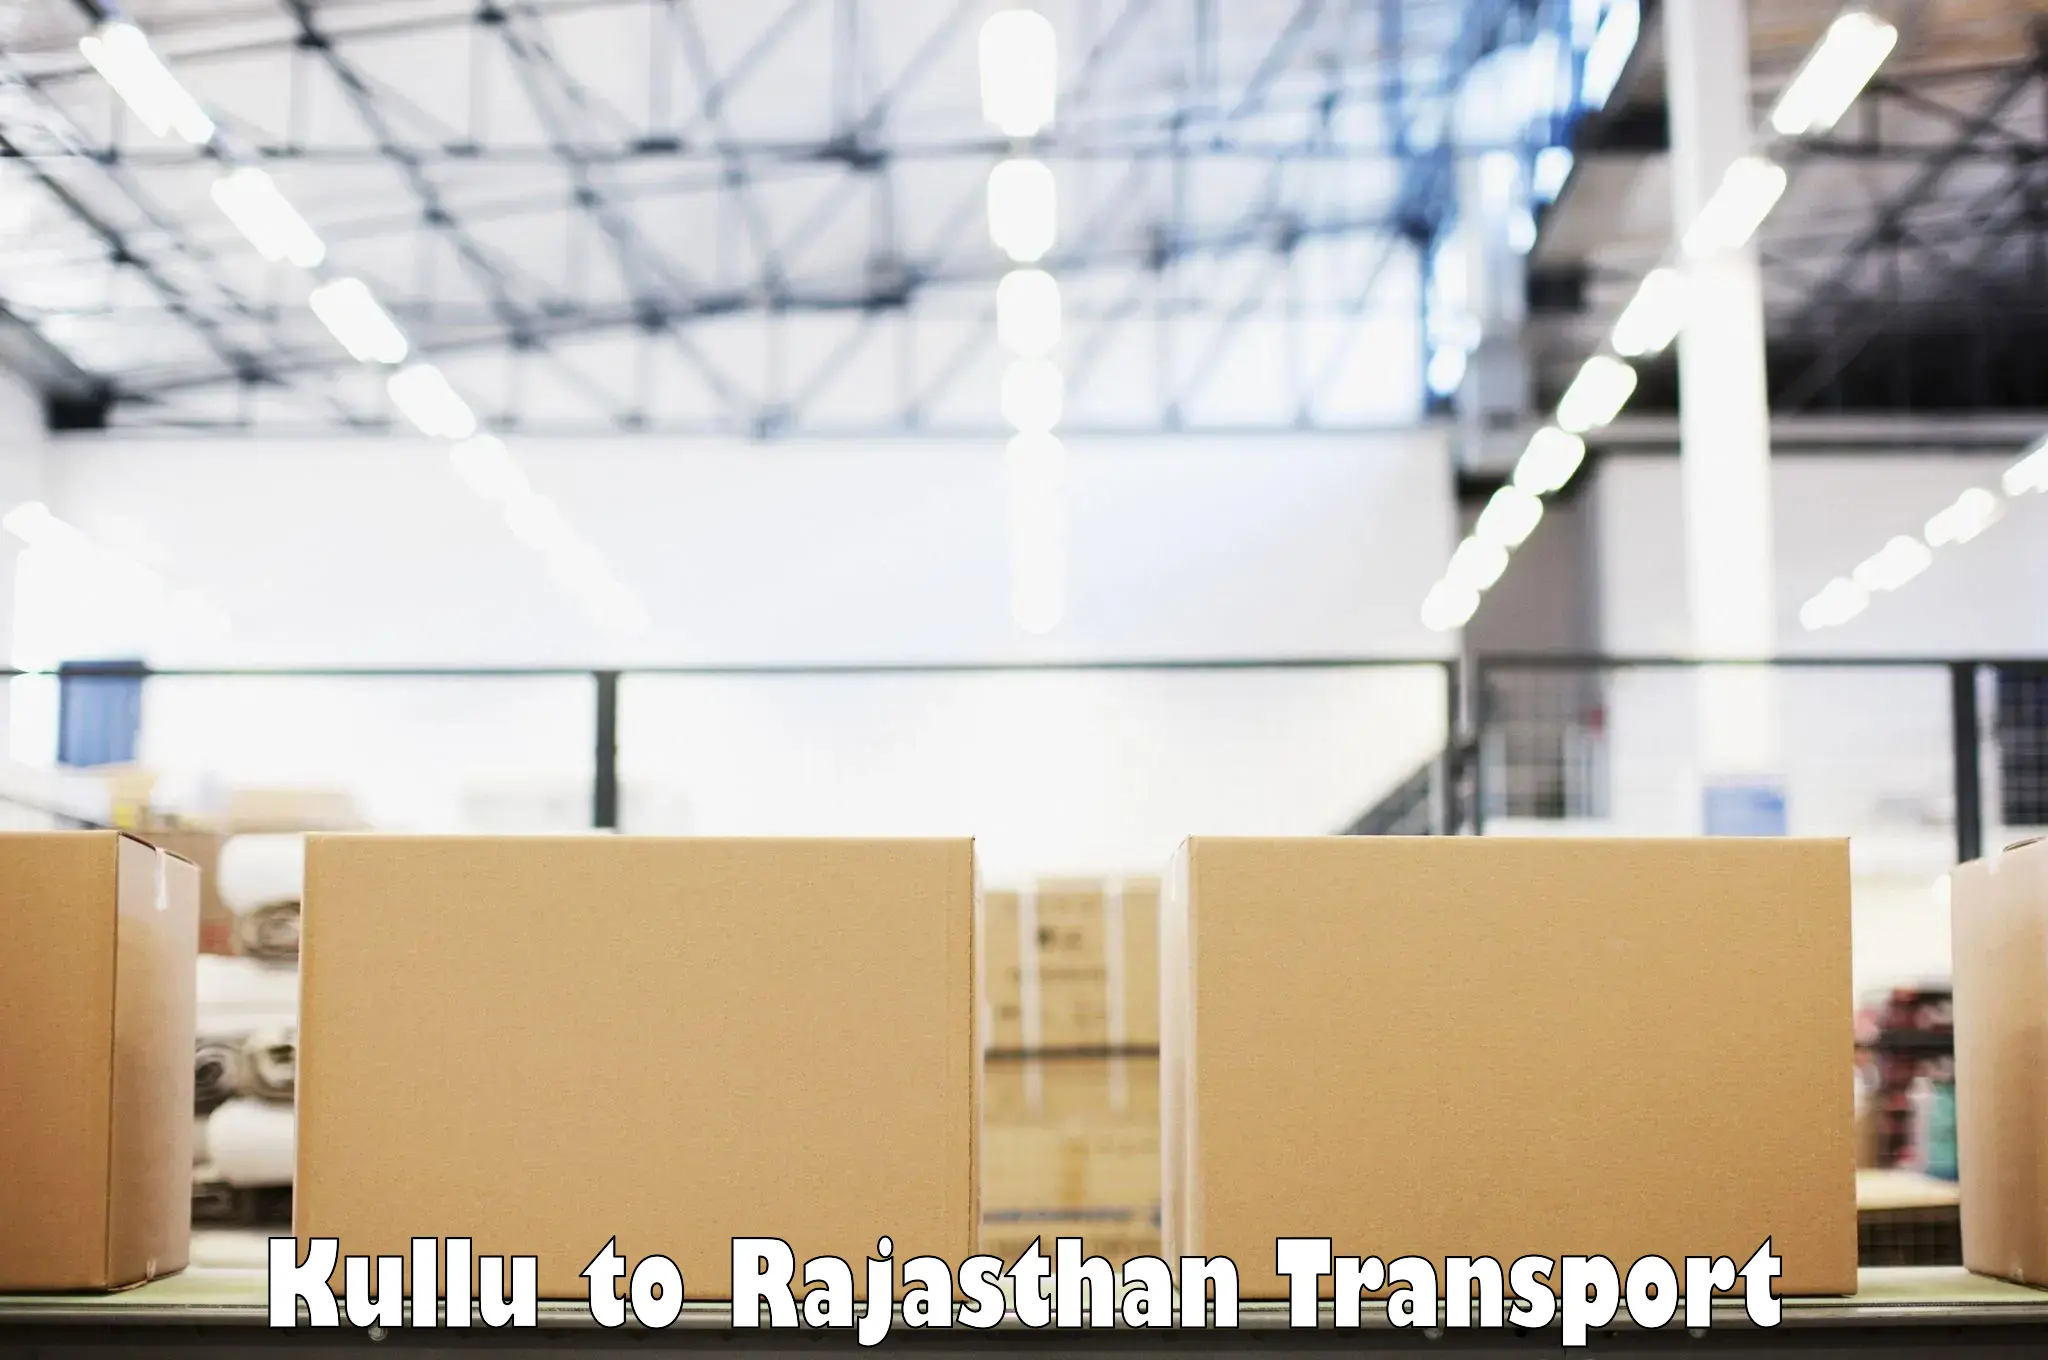 Bike transport service Kullu to Rajasthan